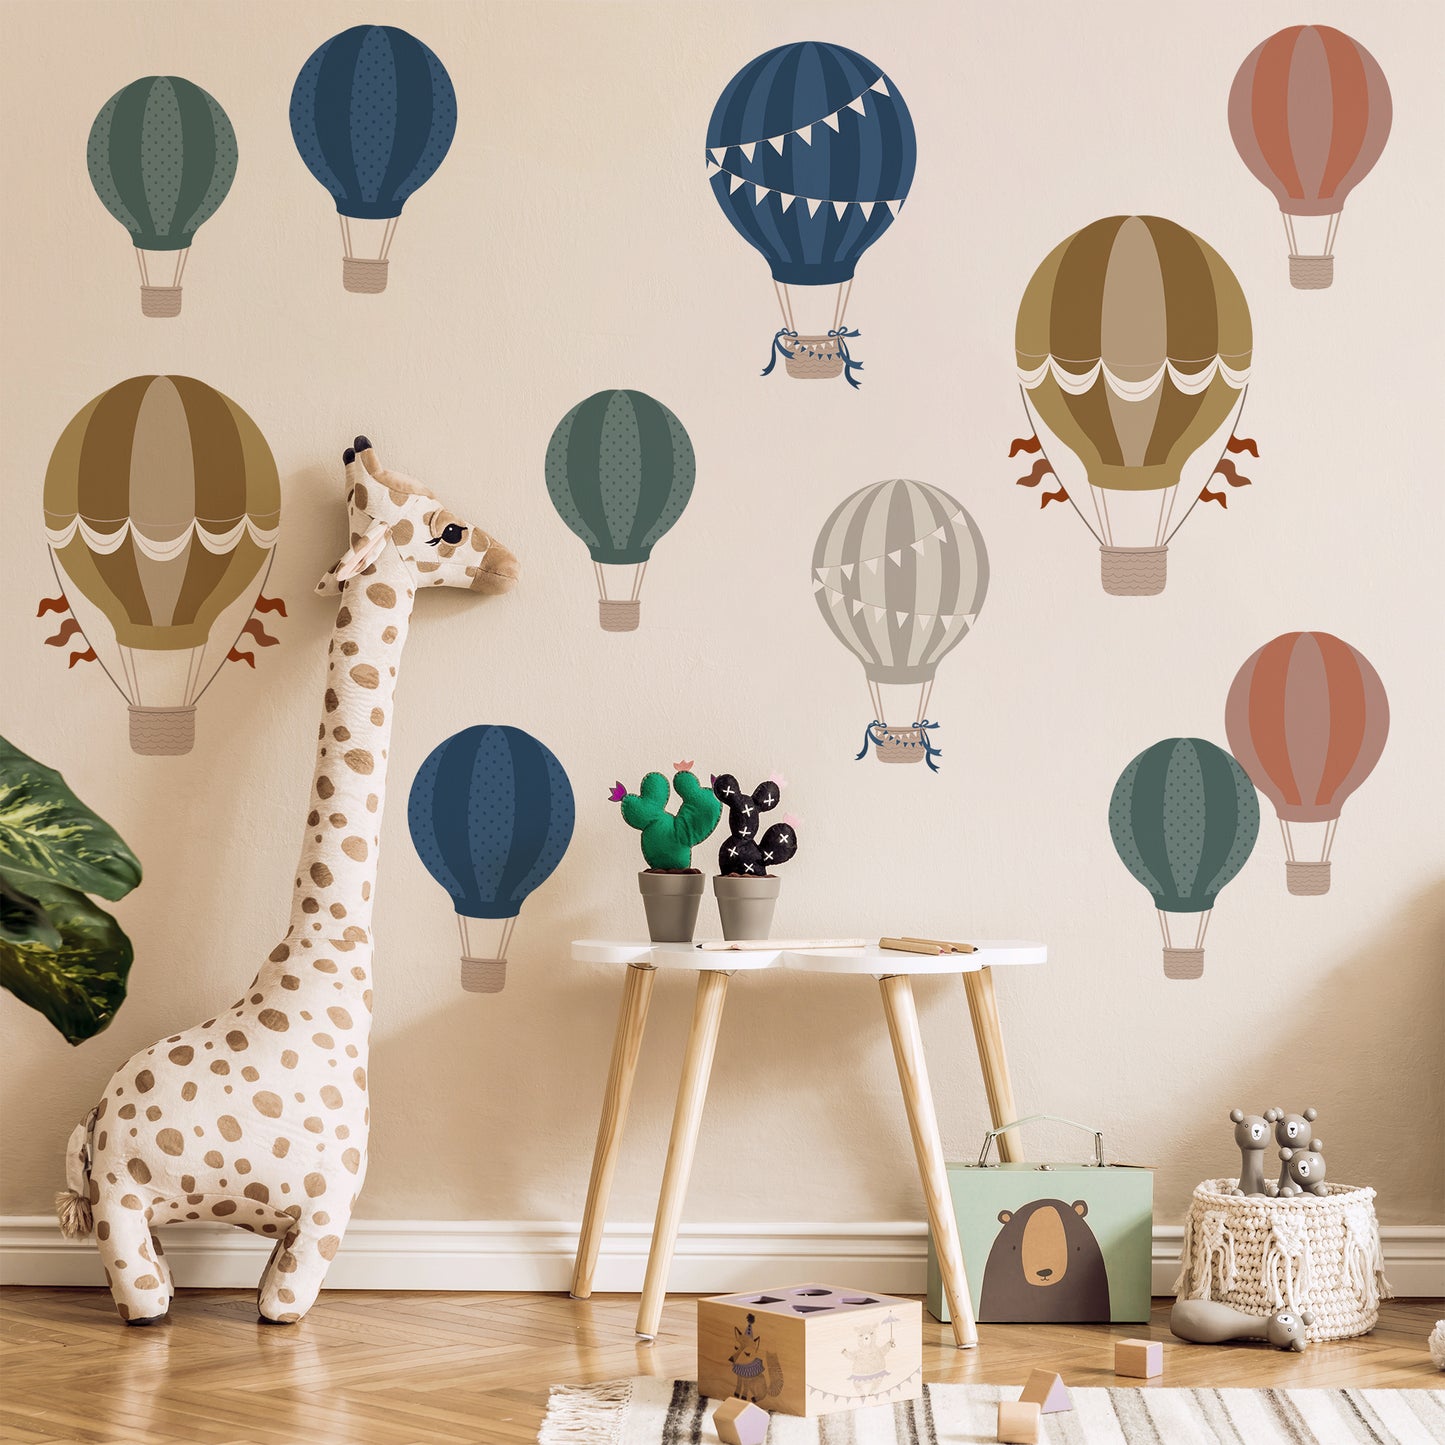 Balloons - Hot Air Balloon Wall Sticker Pack Nursery